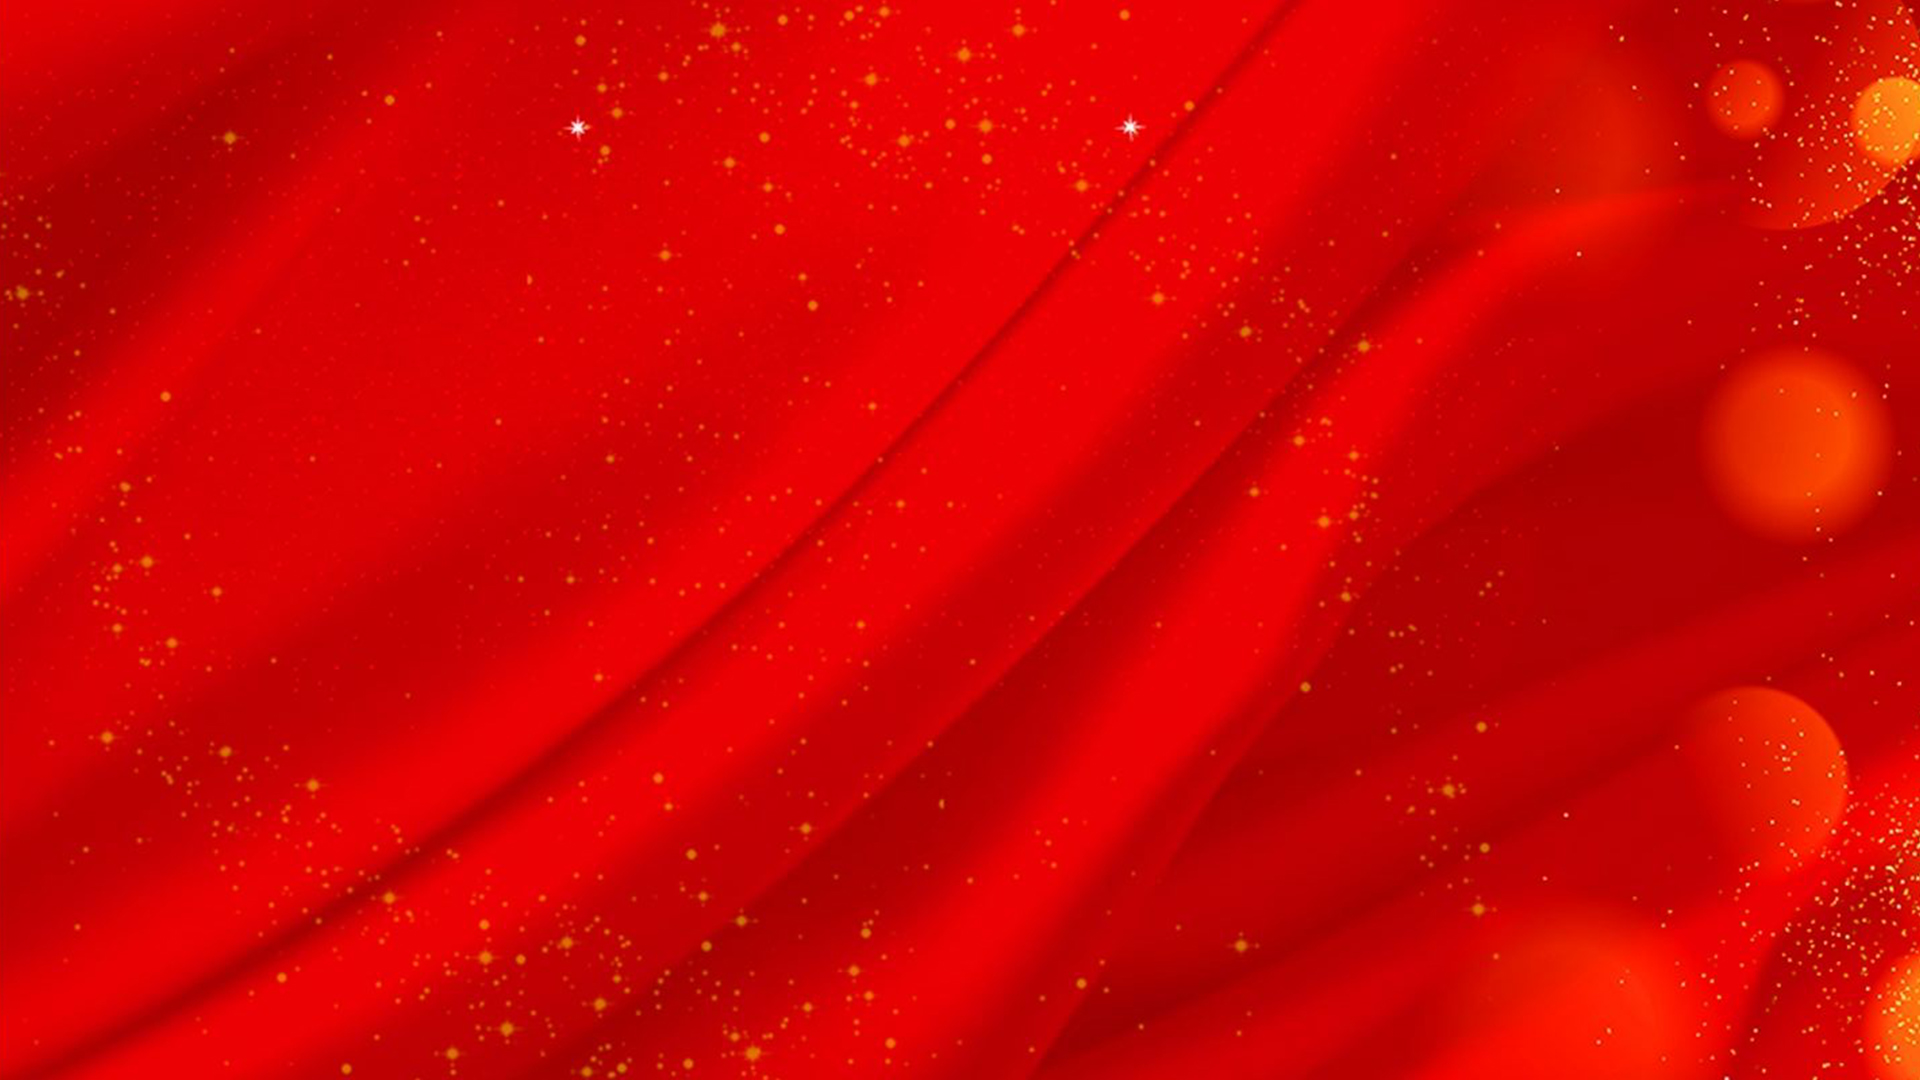 Background Đỏ Sắc Nét là lựa chọn hoàn hảo để thể hiện sự mạnh mẽ và quyến rũ cho bức ảnh của bạn. Được tạo nên từ những sắc đỏ nổi bật và sắc nét, background này sẽ giúp ảnh của bạn trở nên sang trọng và thu hút.